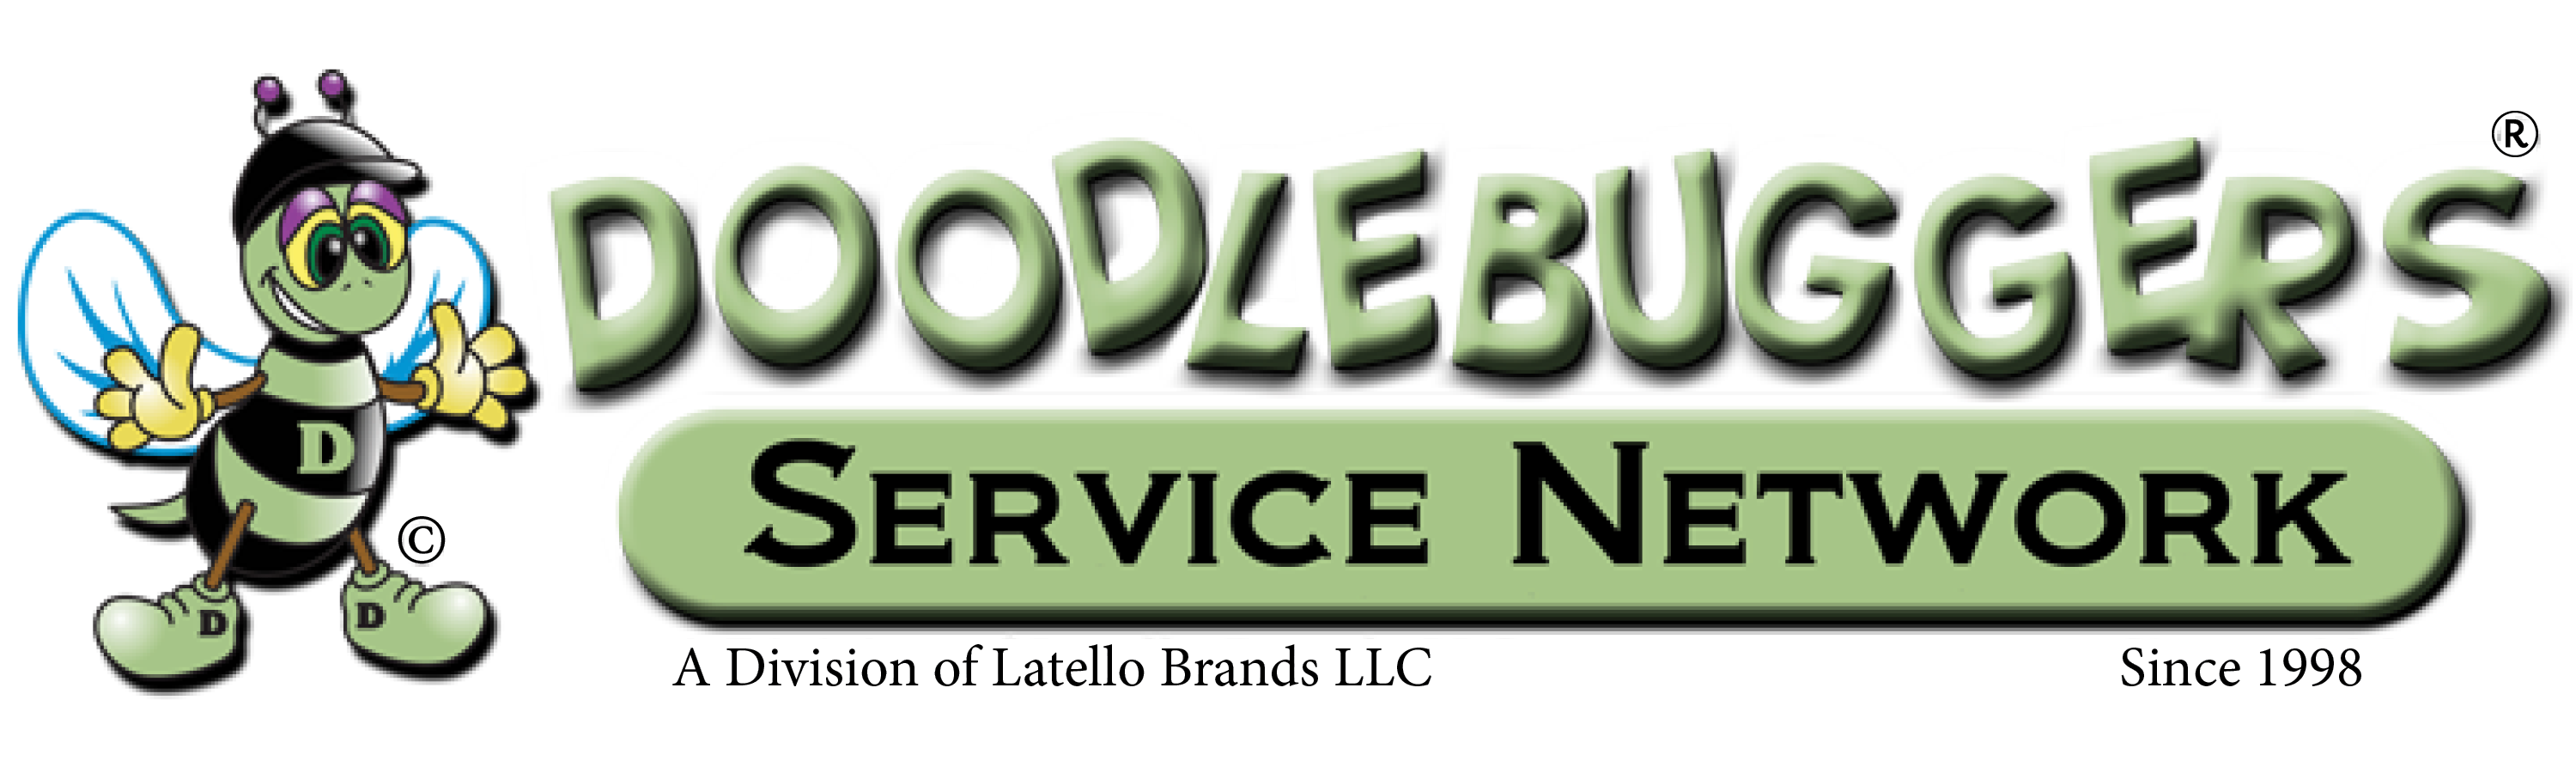 Doodlebuggers Service Network